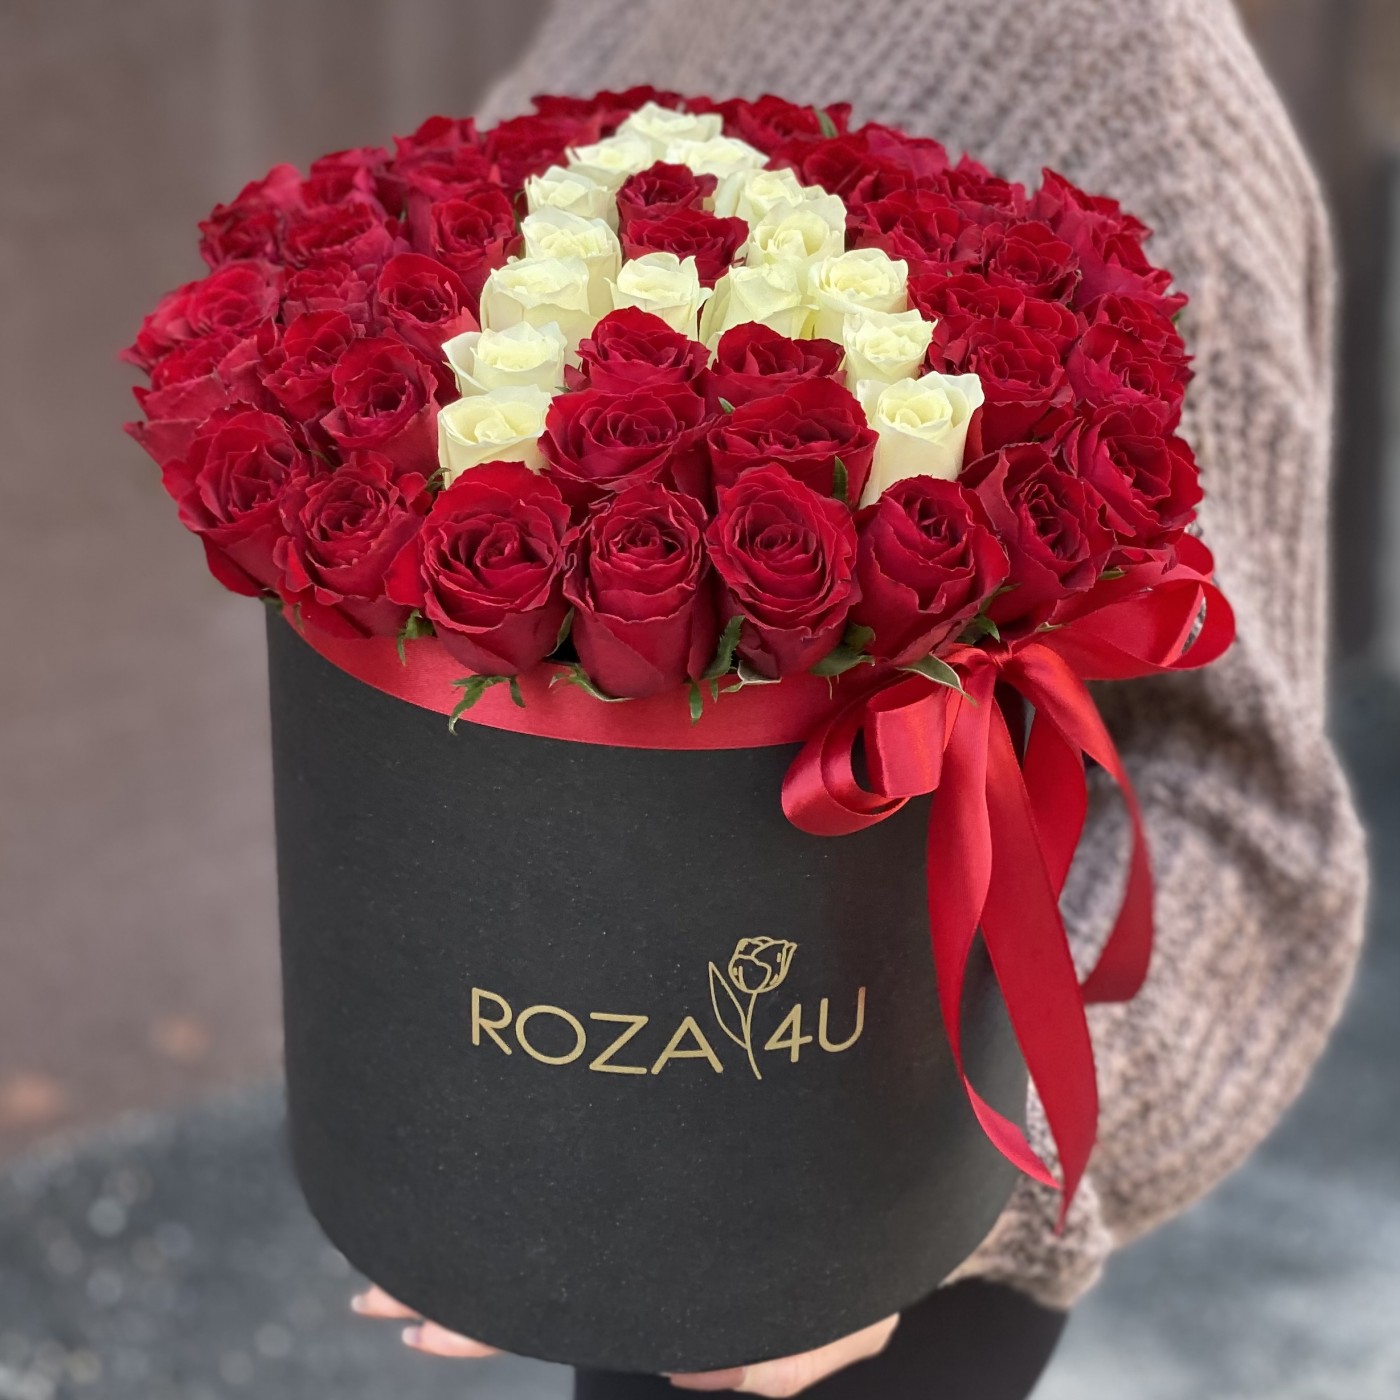 Красные розы в коробке с буквой